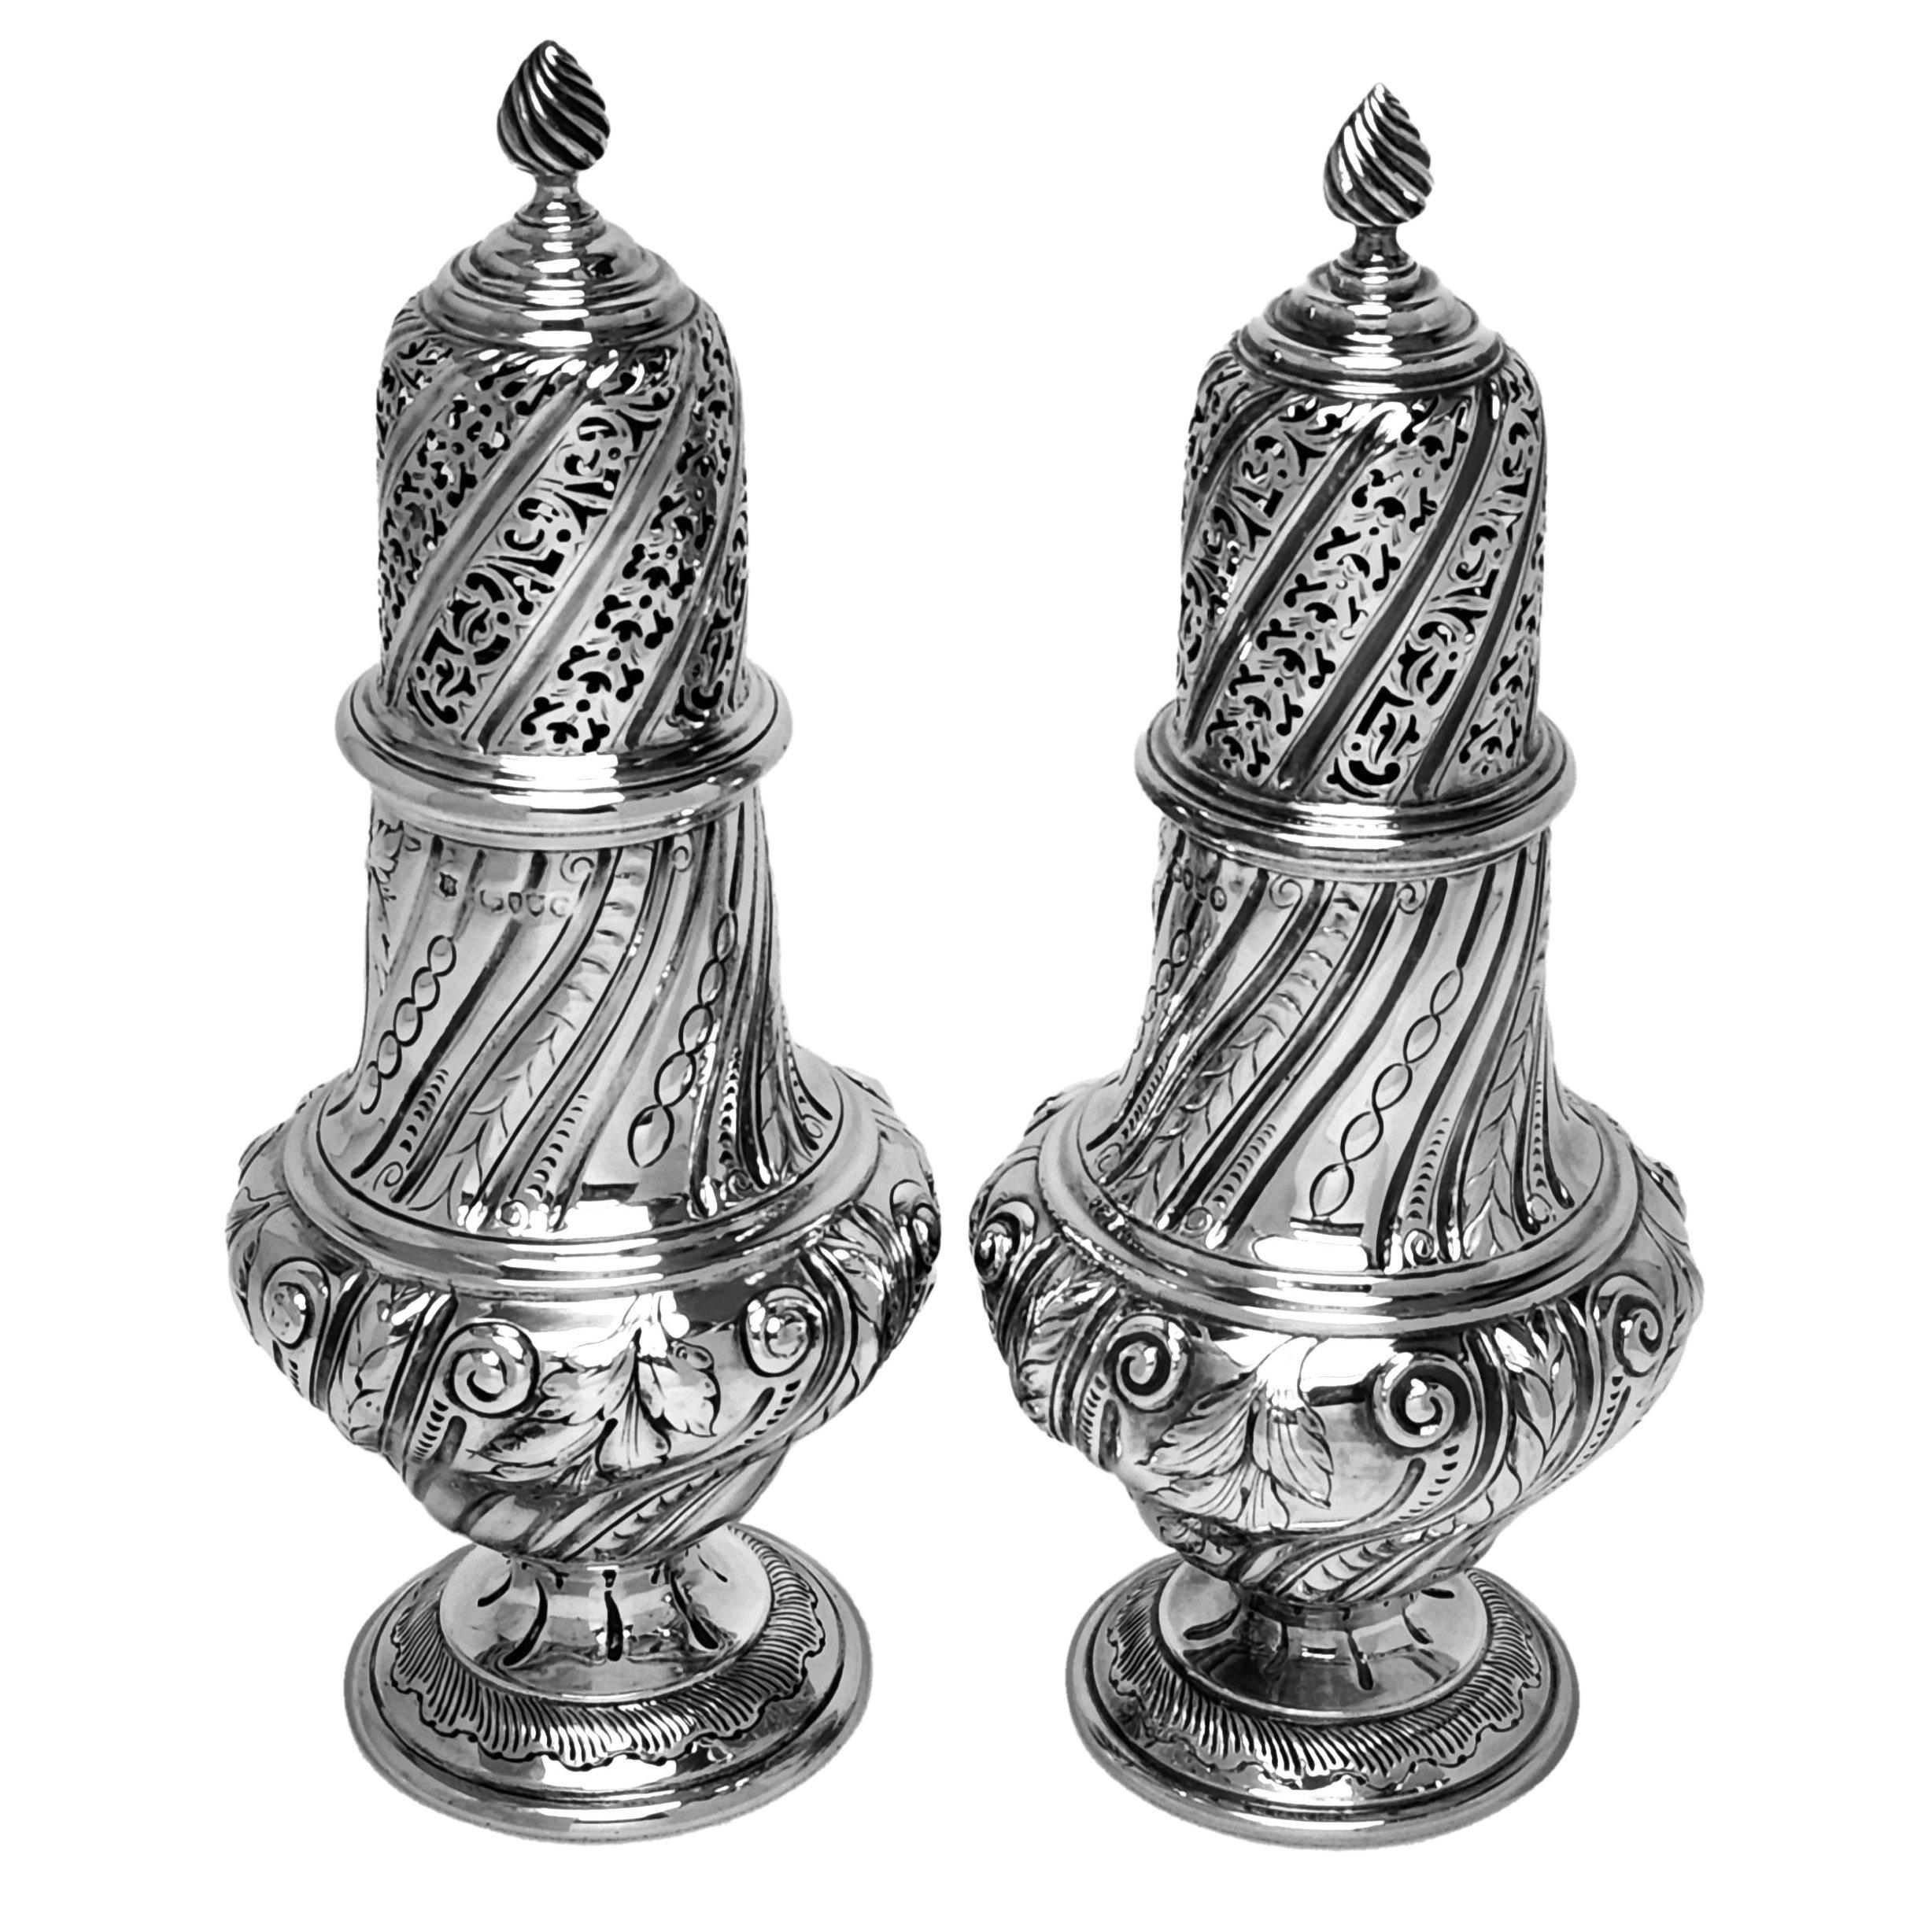 Ein Paar großer antiker viktorianischer Silberrollen in klassischer Balusterform, die auf einem gespreizten Sockelfuß stehen. Der Korpus des Untersetzers ist mit einer geriffelten Form verziert, die sich auf dem Schiebedeckel widerspiegelt. Der